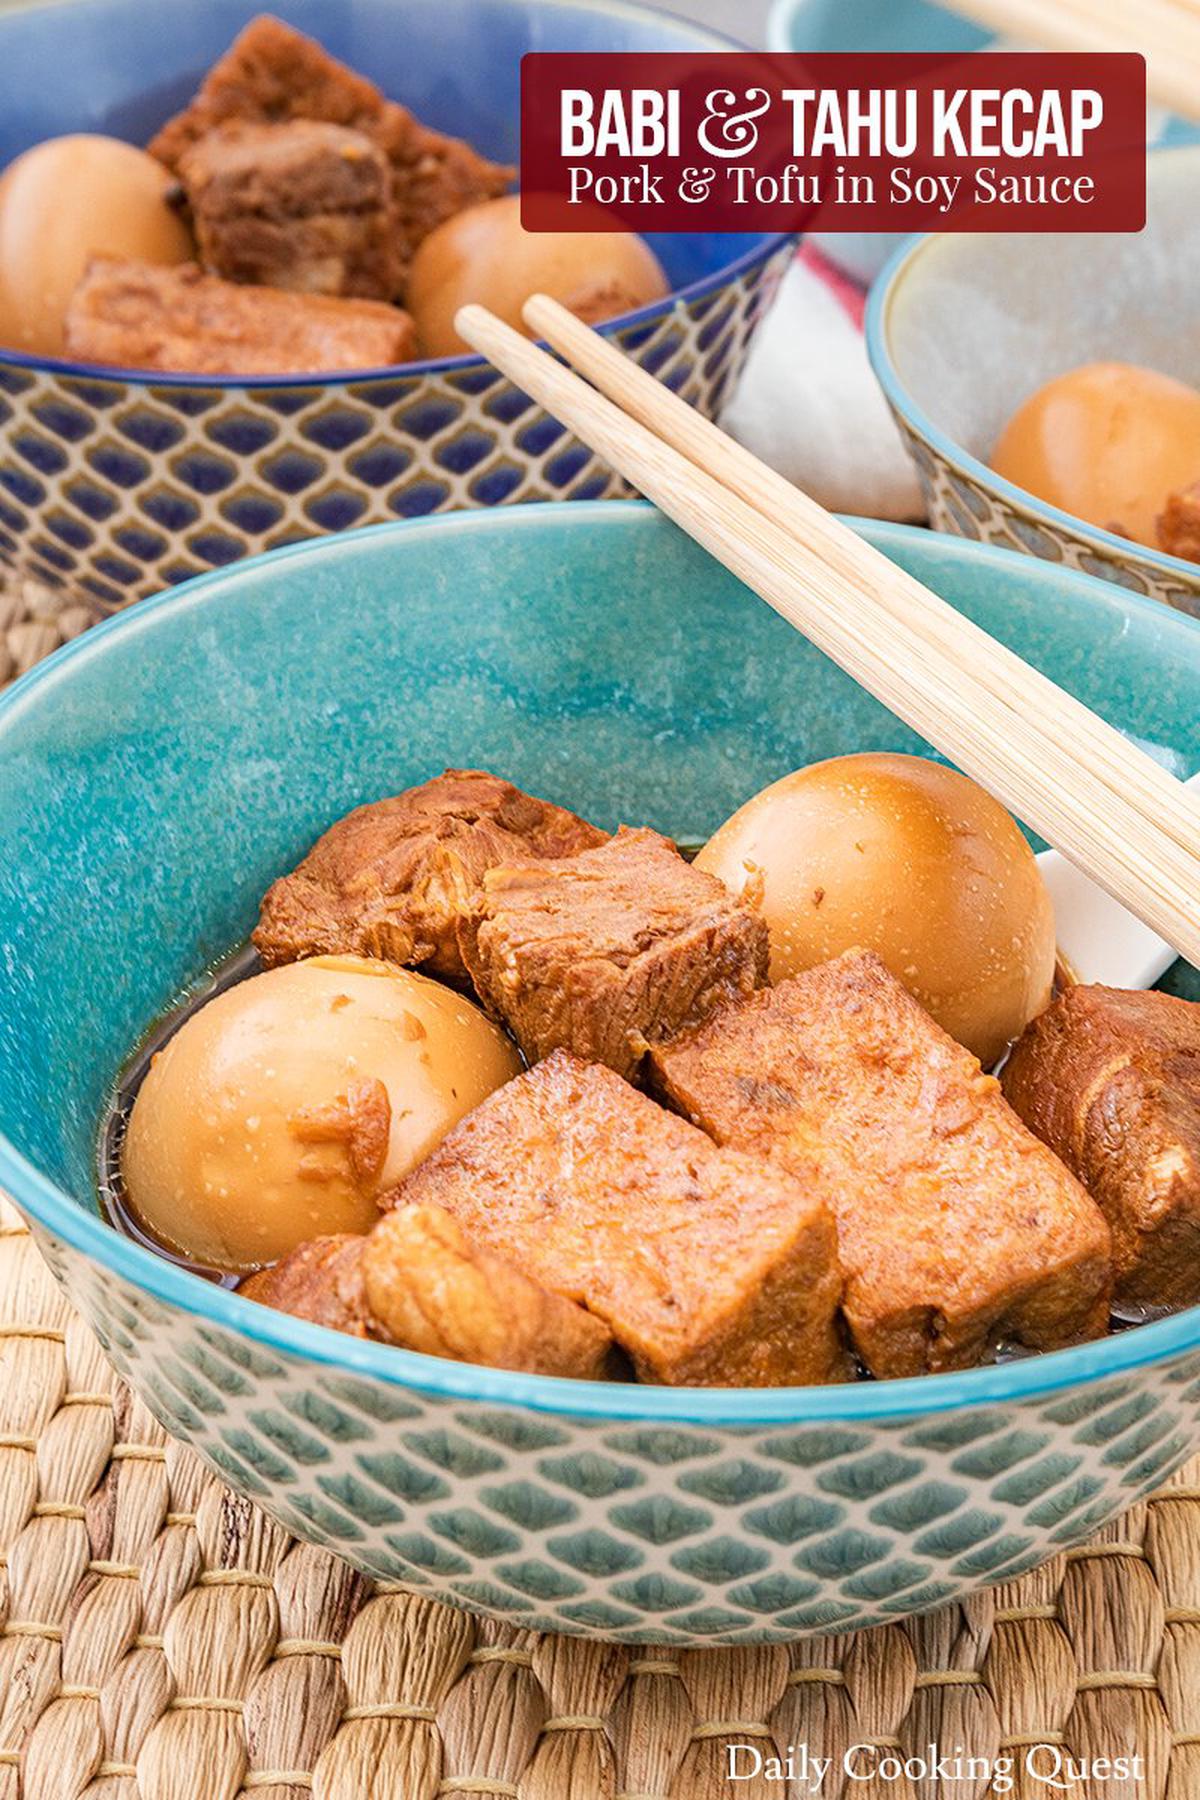 Babi dan Tahu Kecap - Pork and Tofu in Soy Sauce.